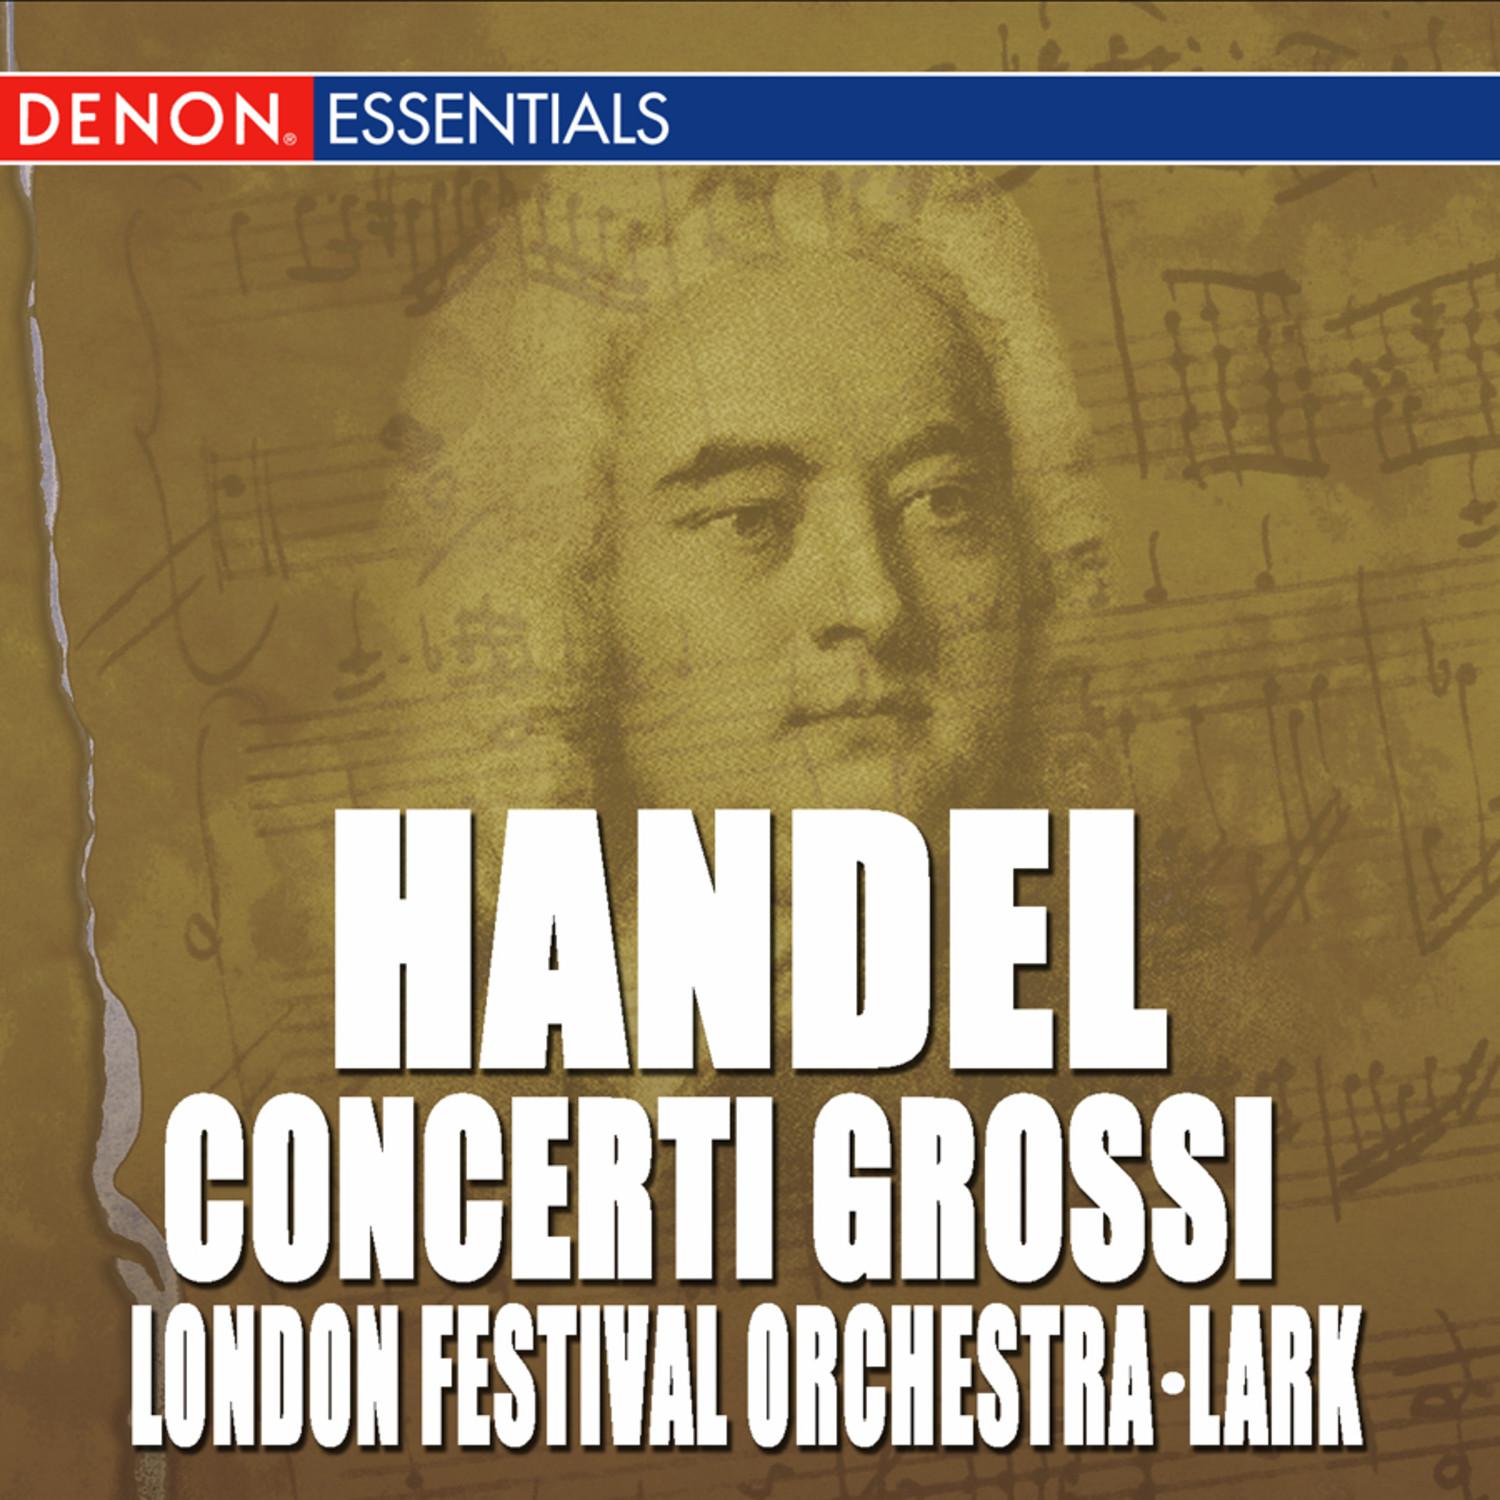 Concerto Grosso Op. 6, No. 1 in G Major: Adagio